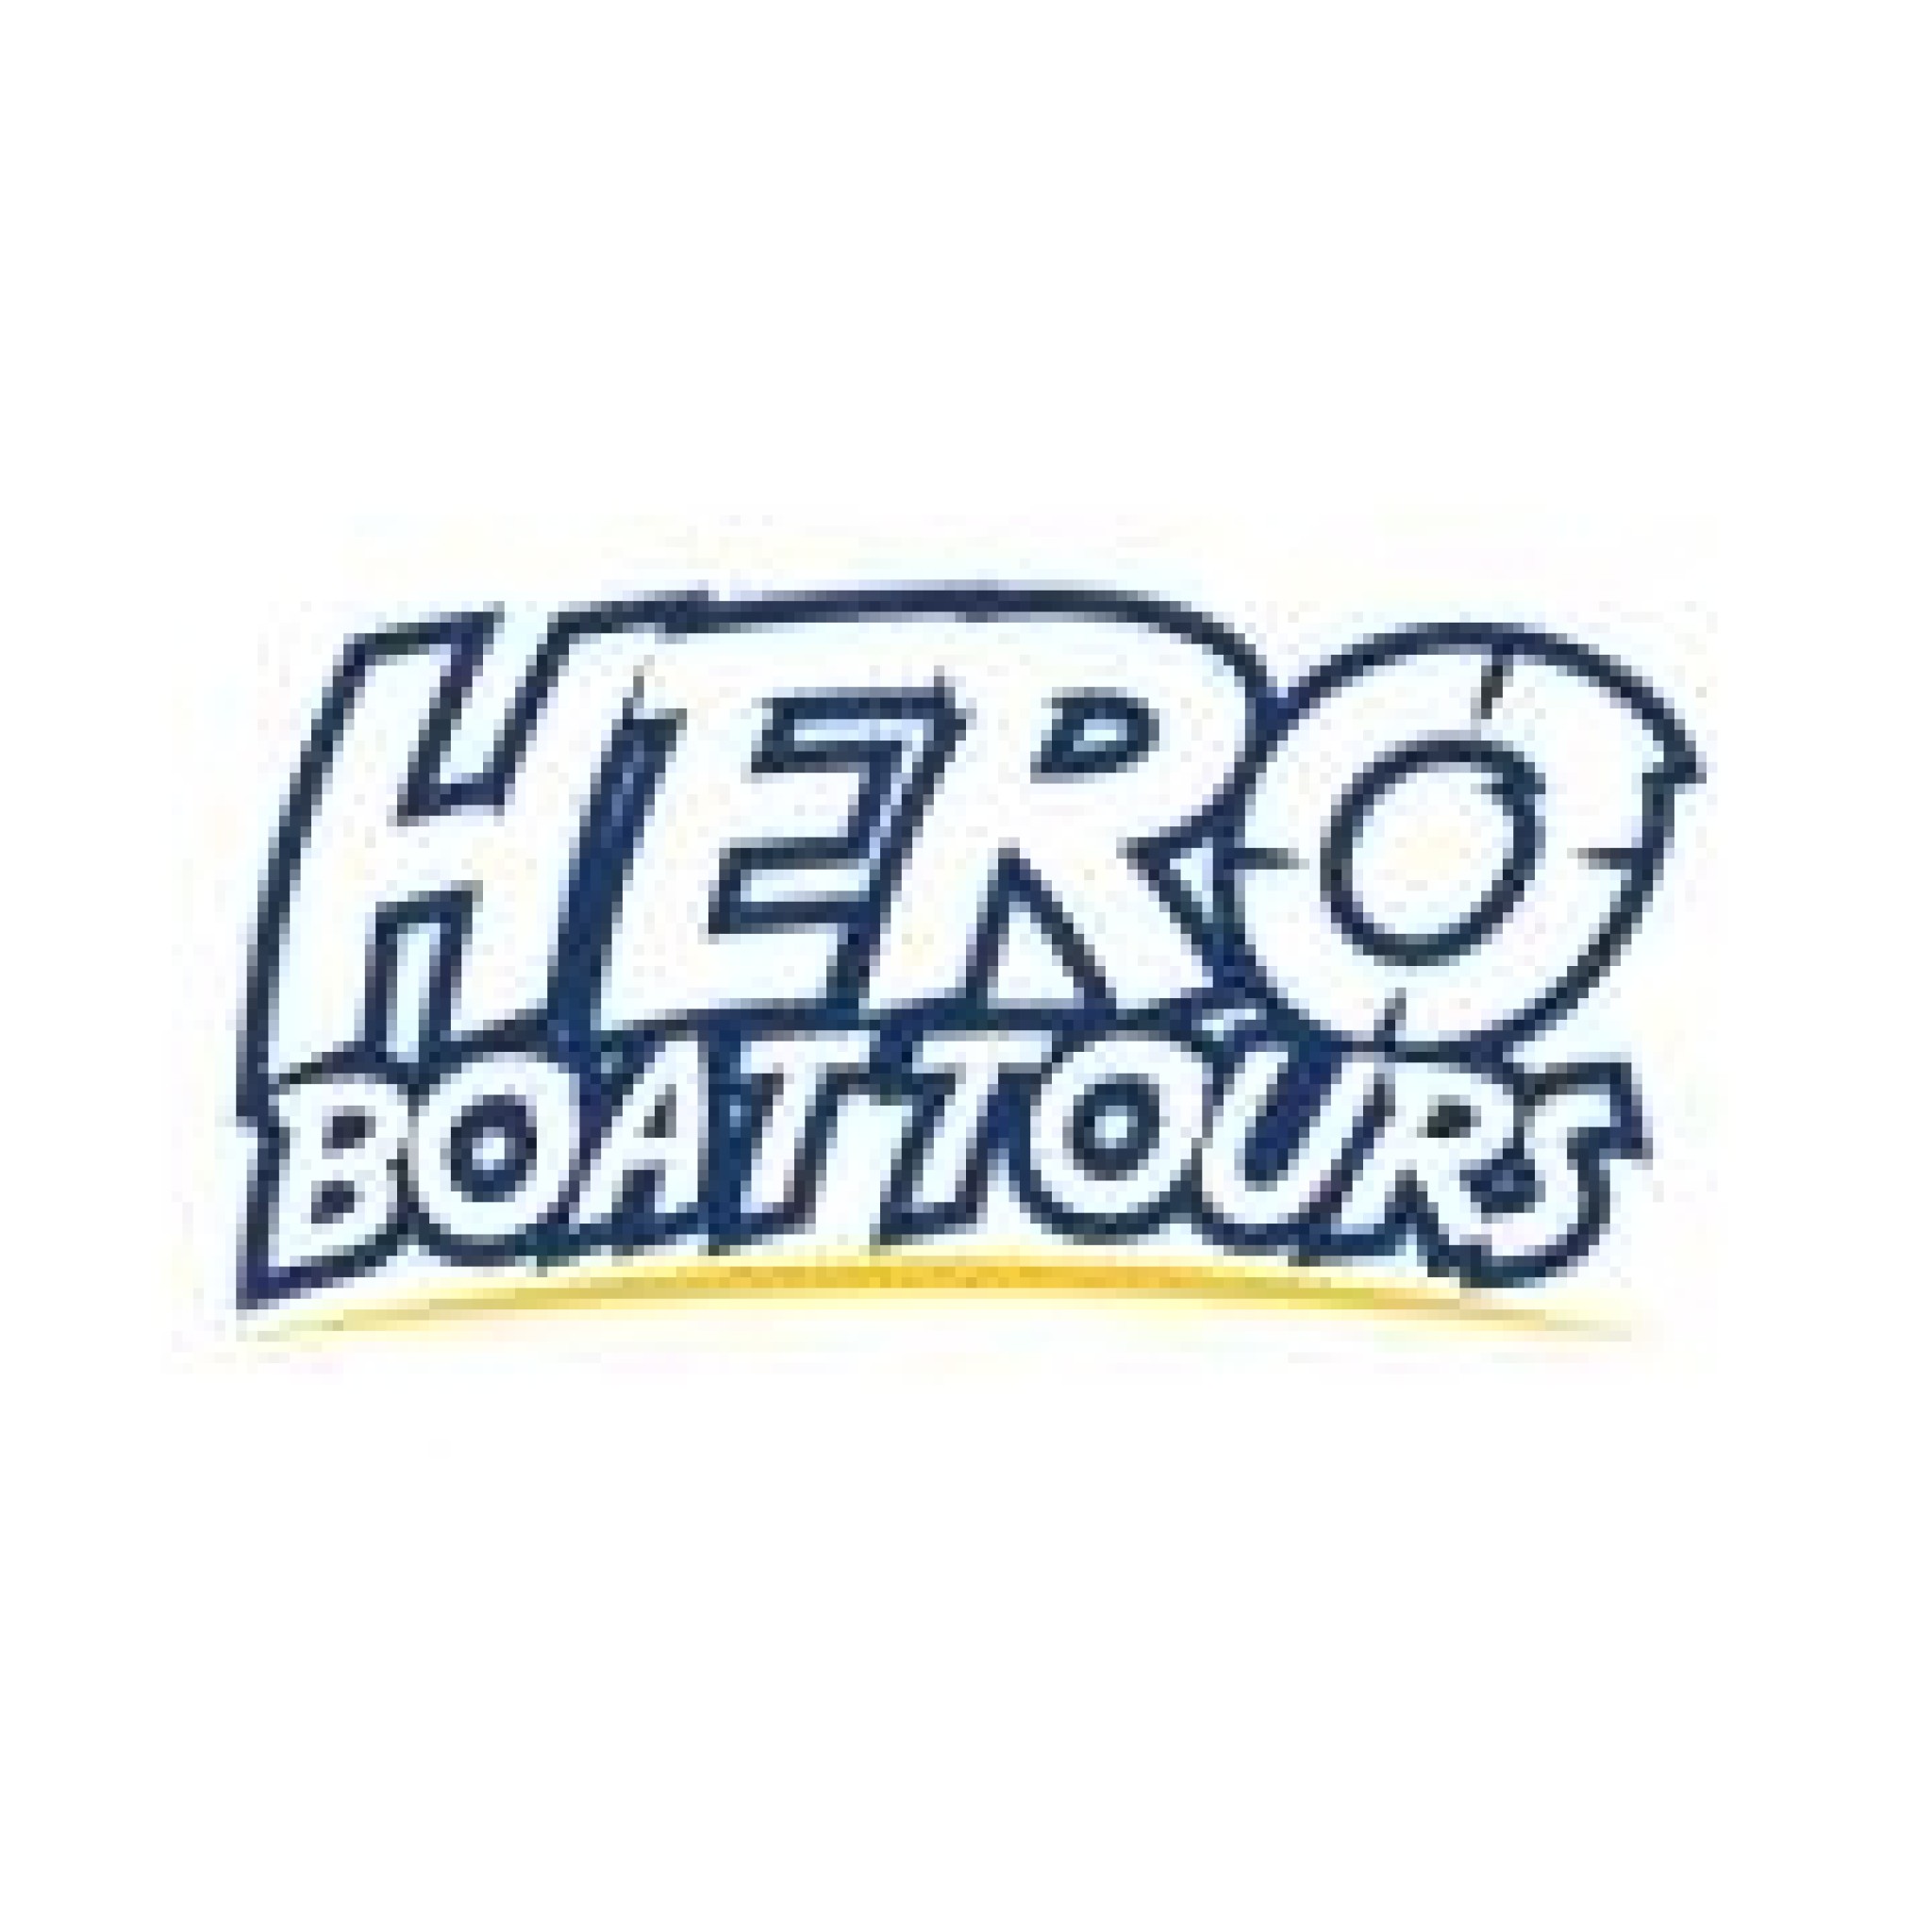 HERO Boat Tours - Dubai